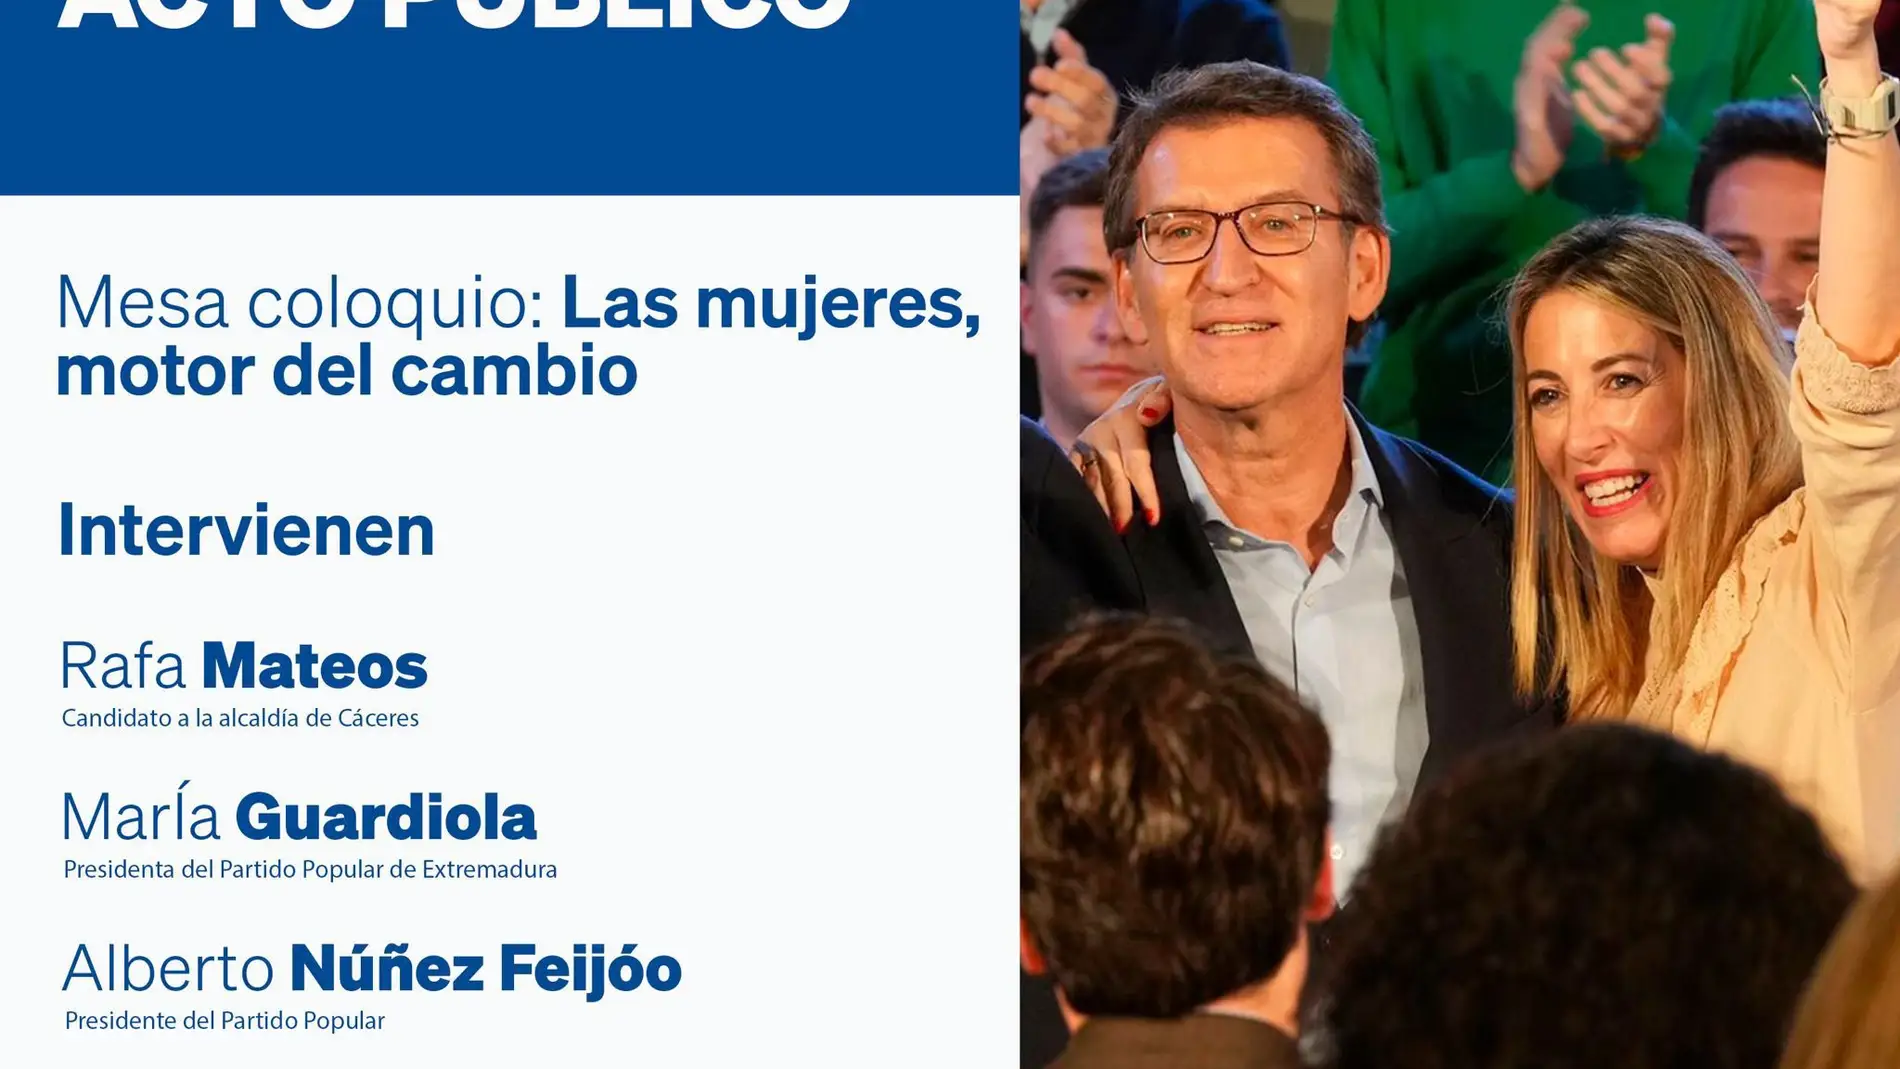 Núñez Feijóo acompañará a María Guardiola en un acto del PP el lunes 6 de marzo en Cáceres